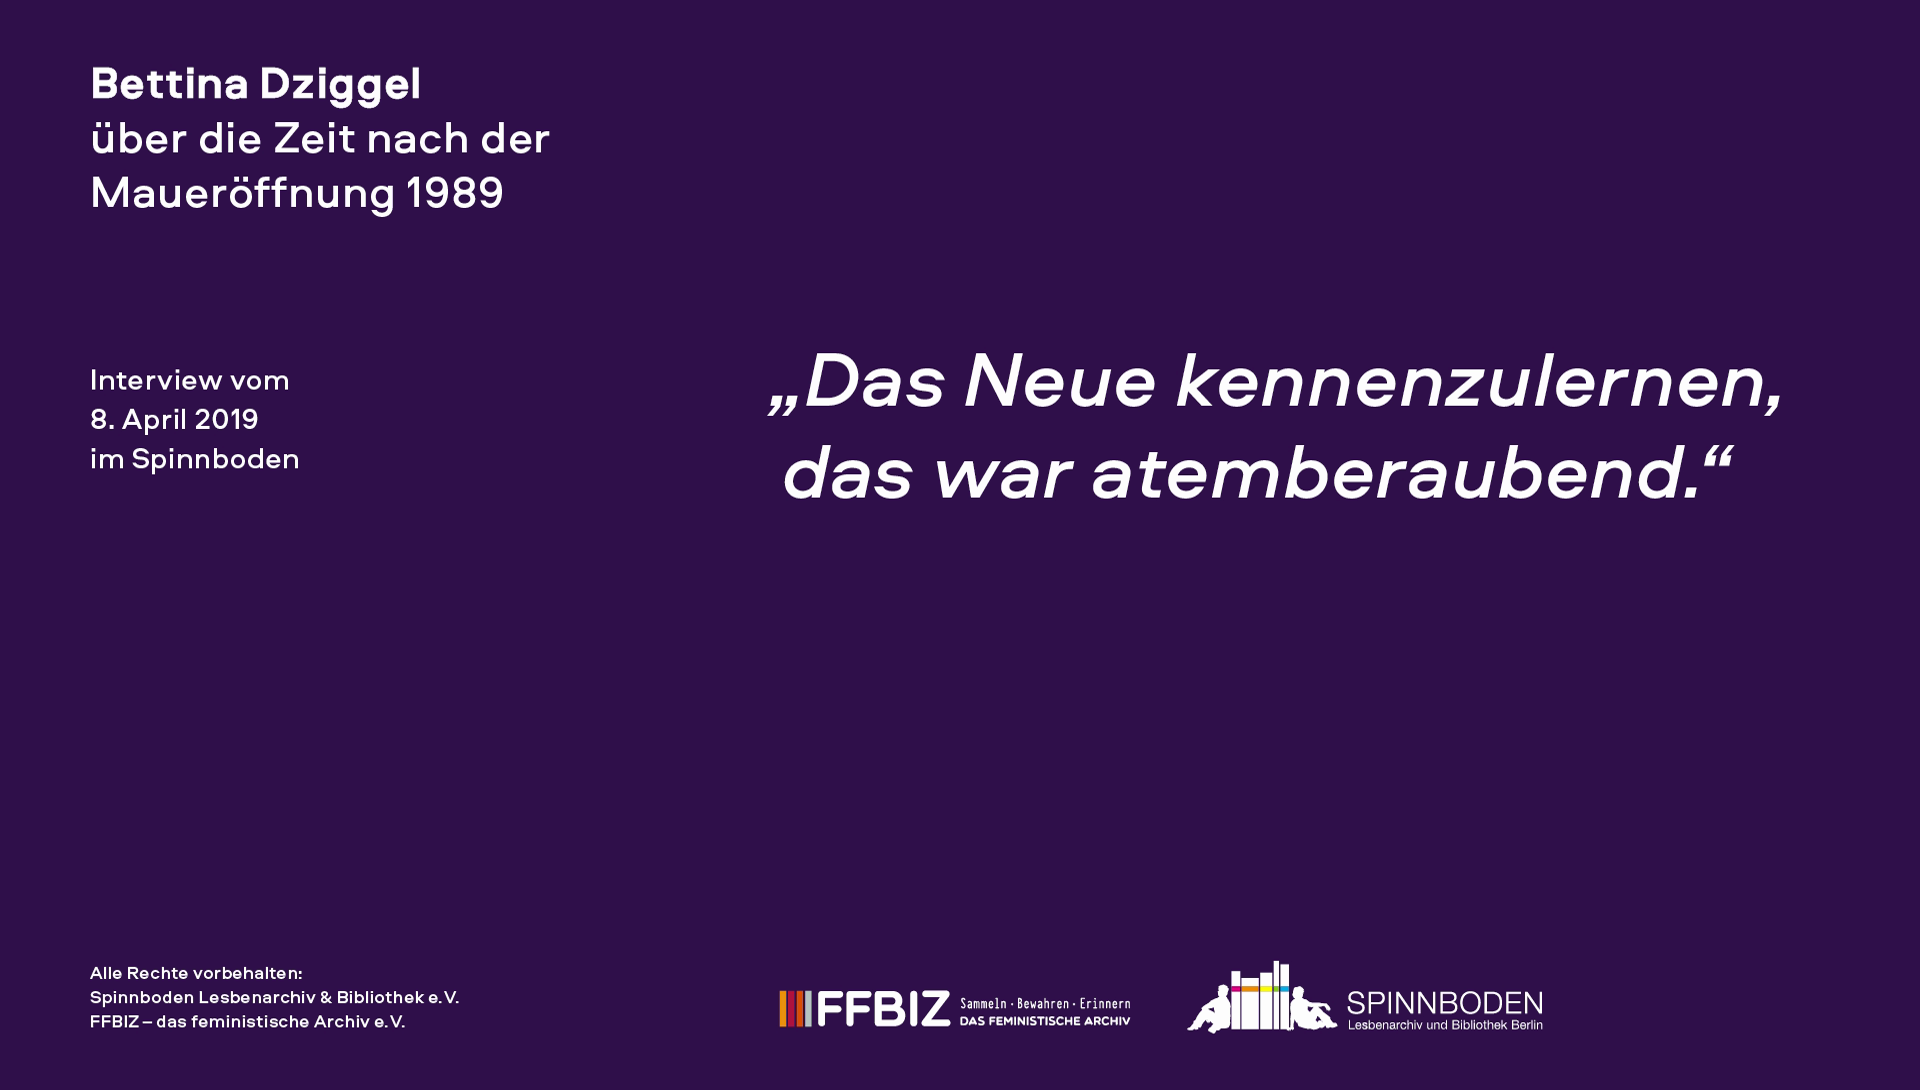 Interview mit Bettina Dziggel im Rahmen des Projektes "Friedliche Revolution"? Lesbisch-feministische Perspektiven auf 1989